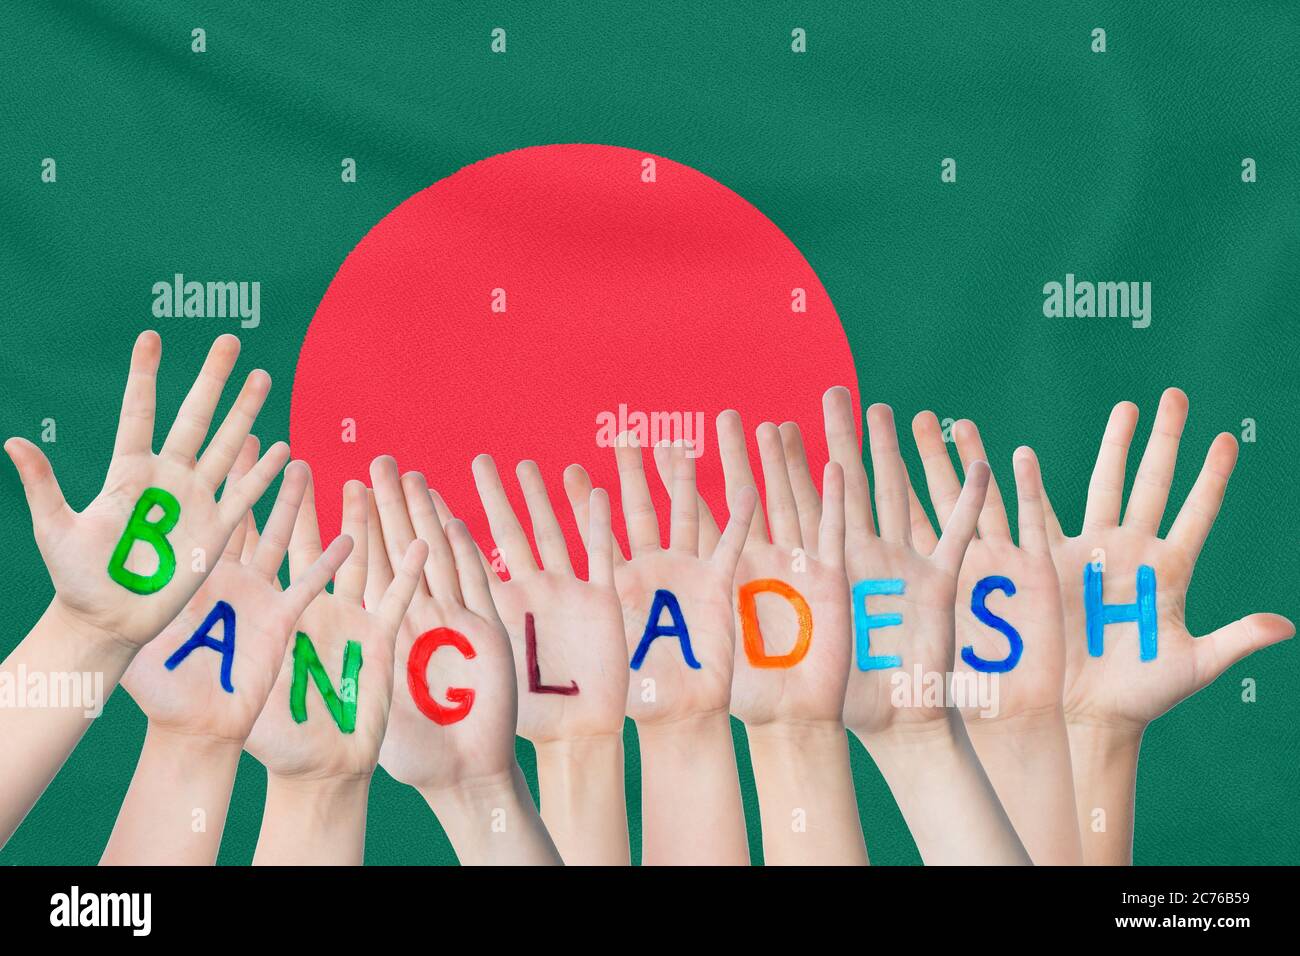 Inschrift Bangladesch auf den Kinderhände vor dem Hintergrund einer winkenden Flagge des Bangladesch Stockfoto